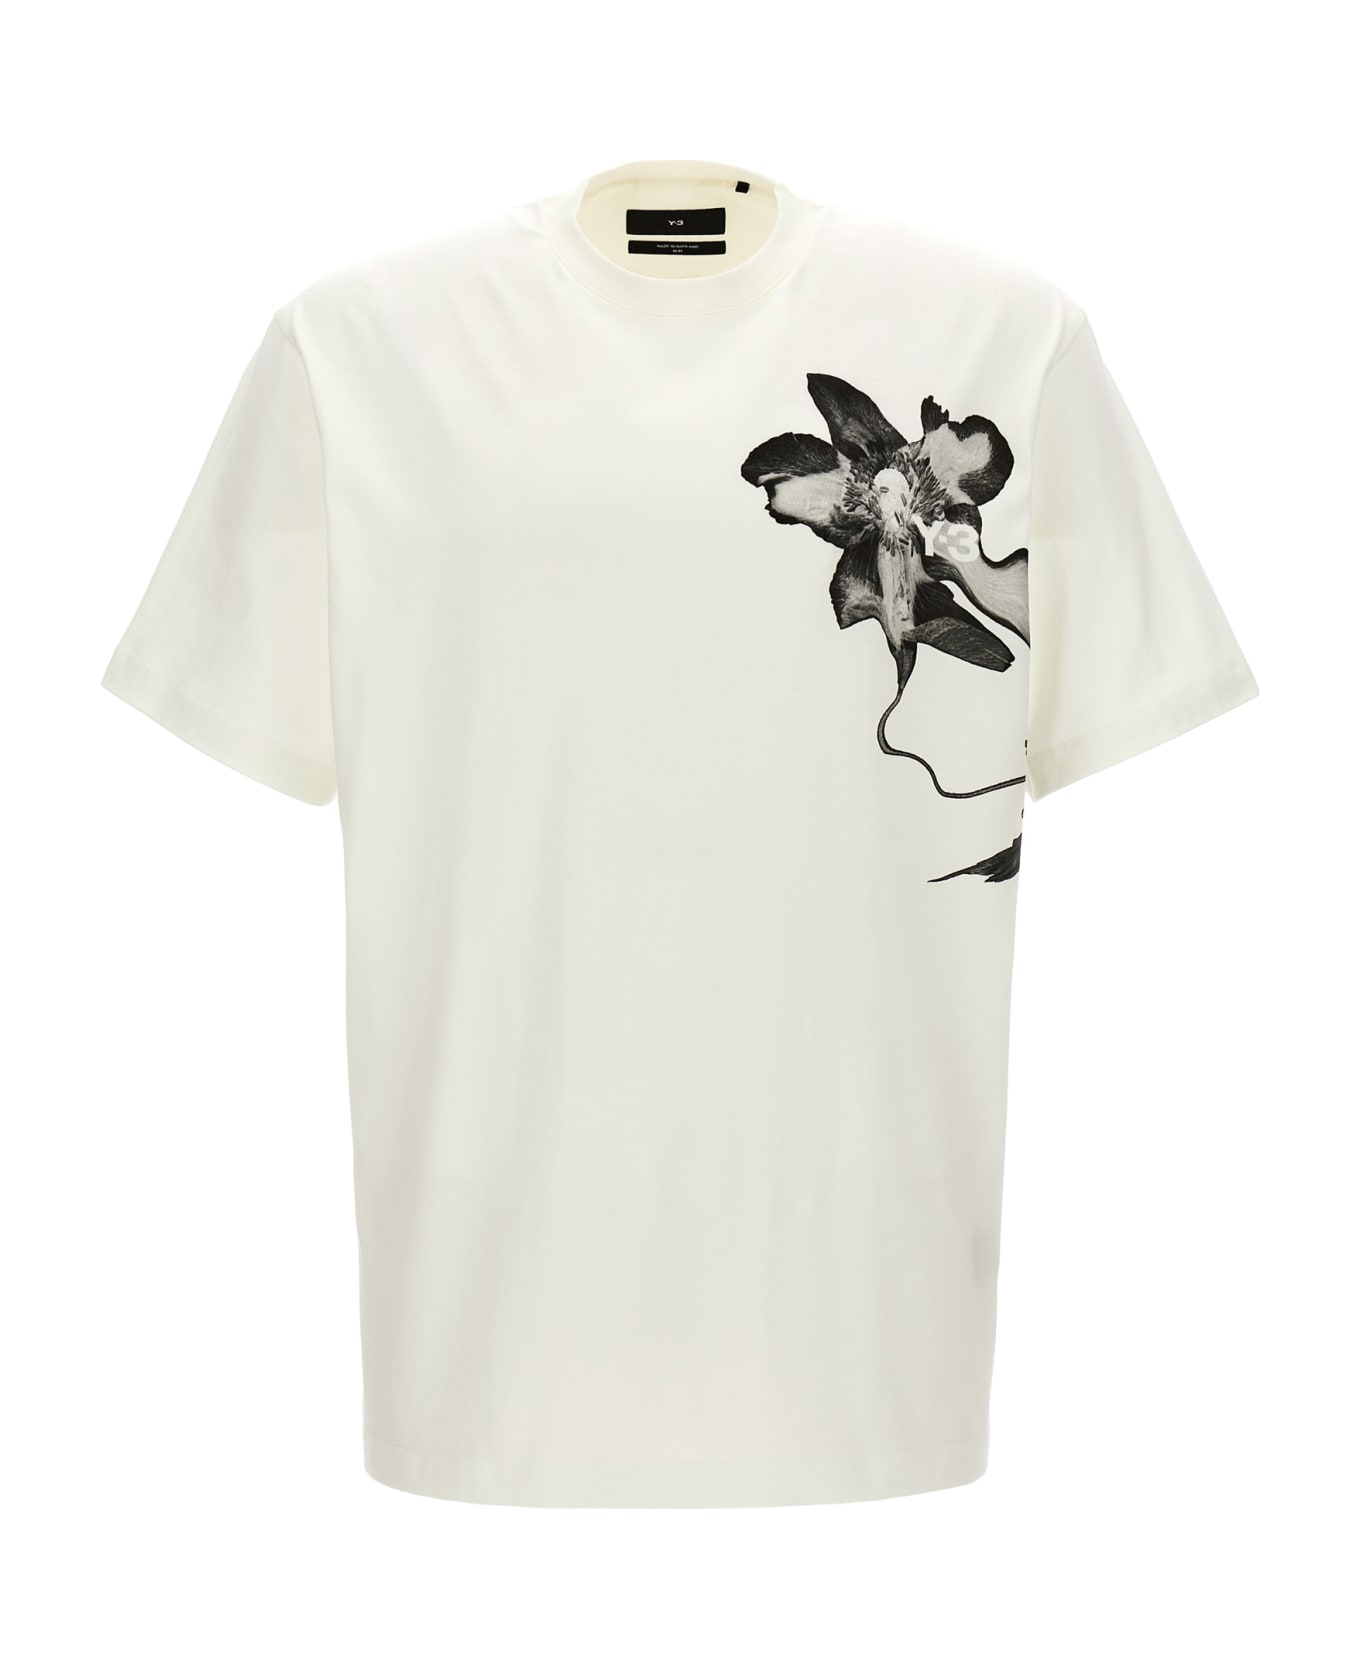 Y-3 'gfx' T-shirt - White/Black